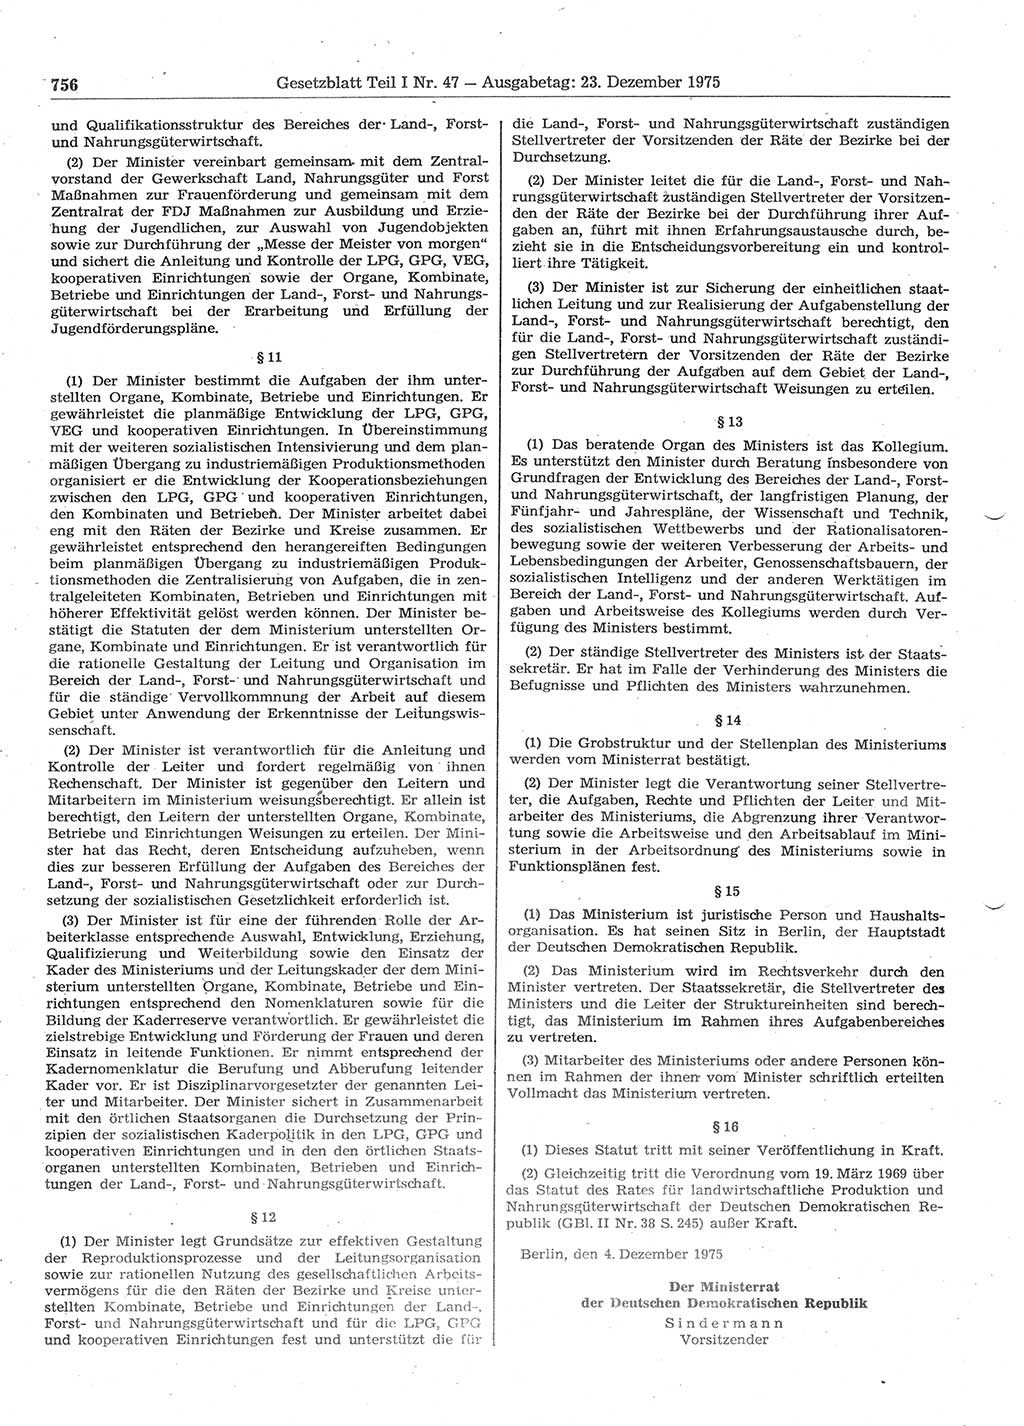 Gesetzblatt (GBl.) der Deutschen Demokratischen Republik (DDR) Teil Ⅰ 1975, Seite 756 (GBl. DDR Ⅰ 1975, S. 756)